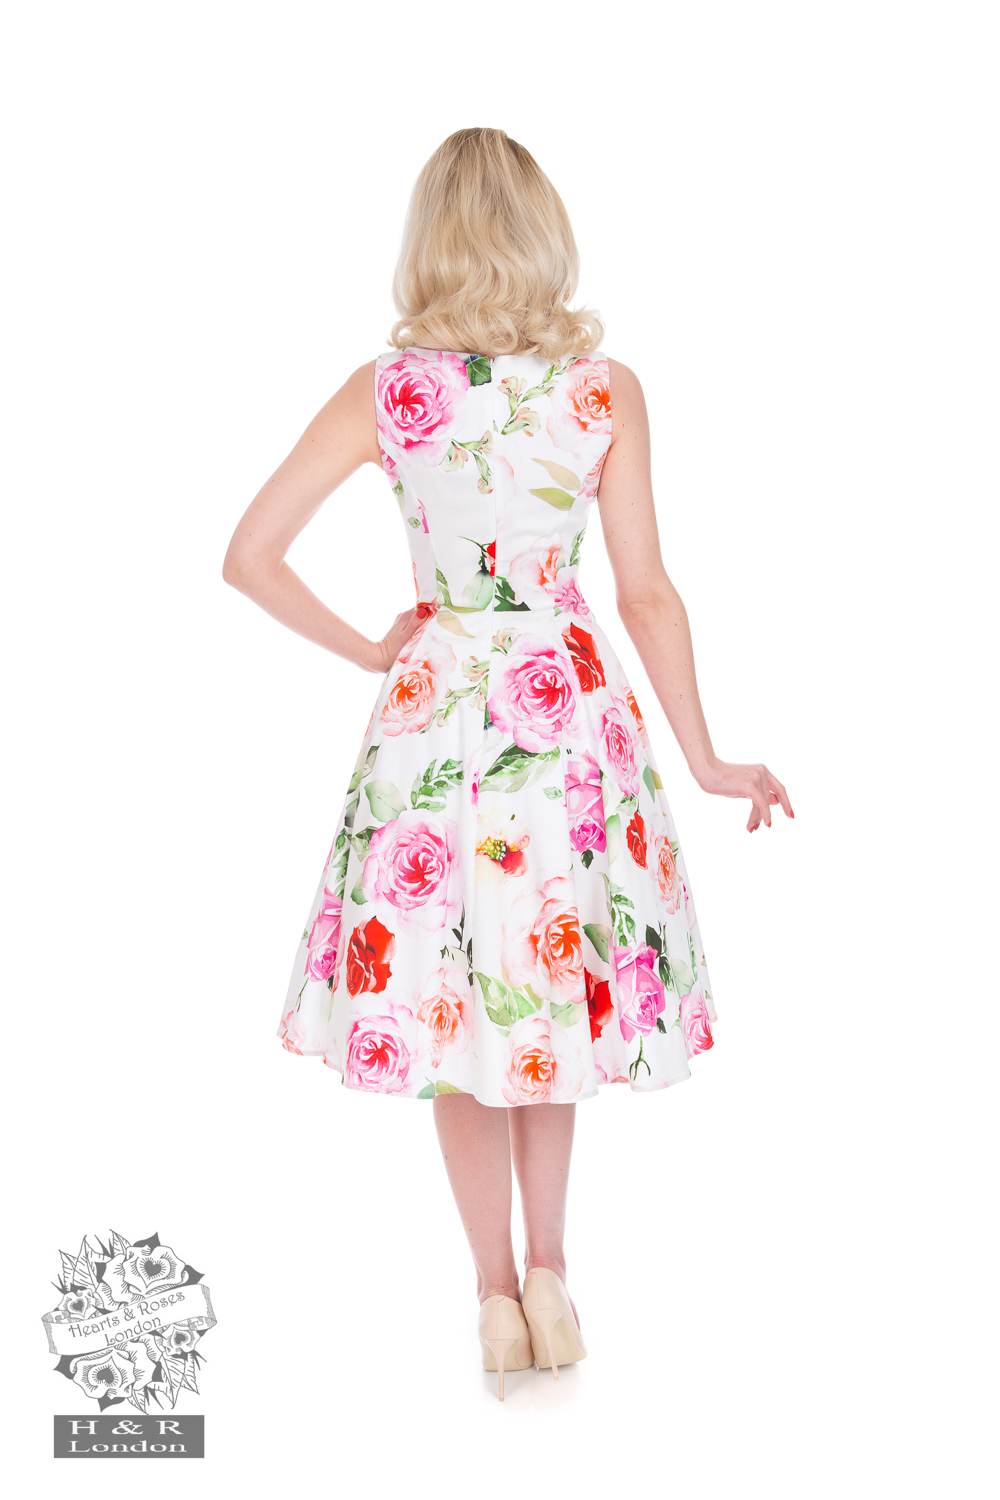 Scarlett Floral Swing Dress in Cream - Hearts & Roses London